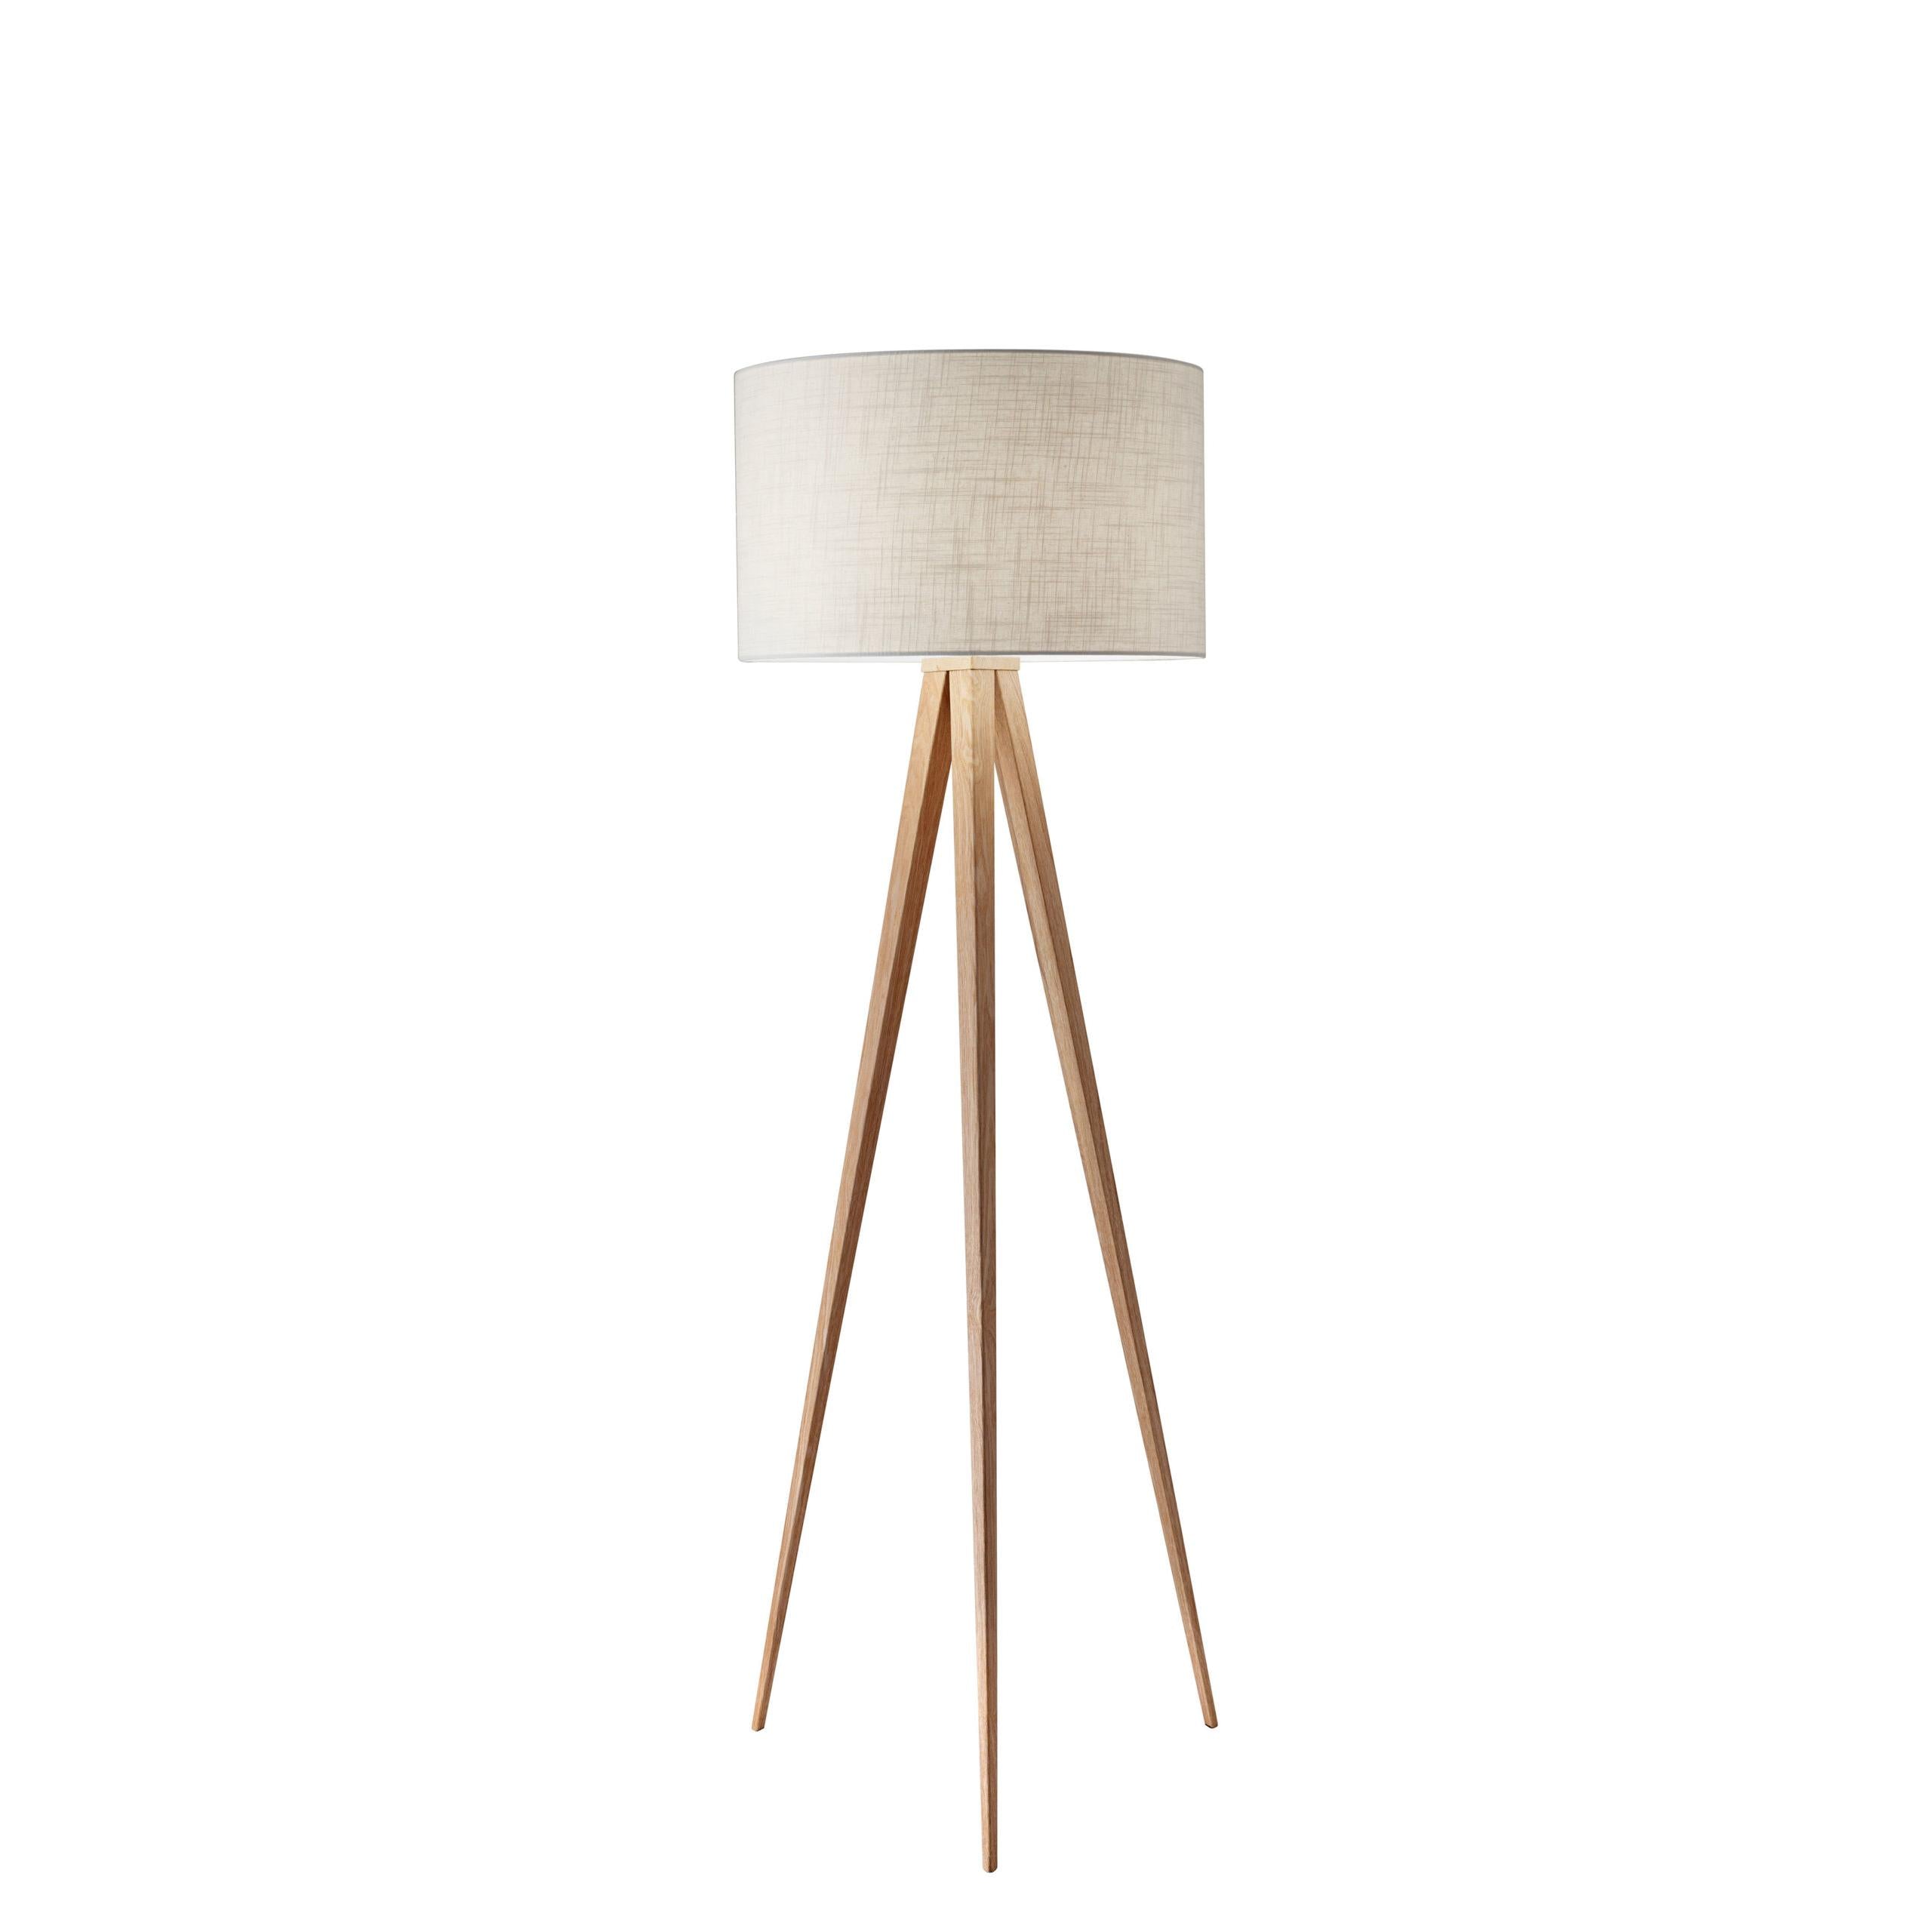 DIRECTOR Floor lamp Wood - 6424-12 | ADESSO